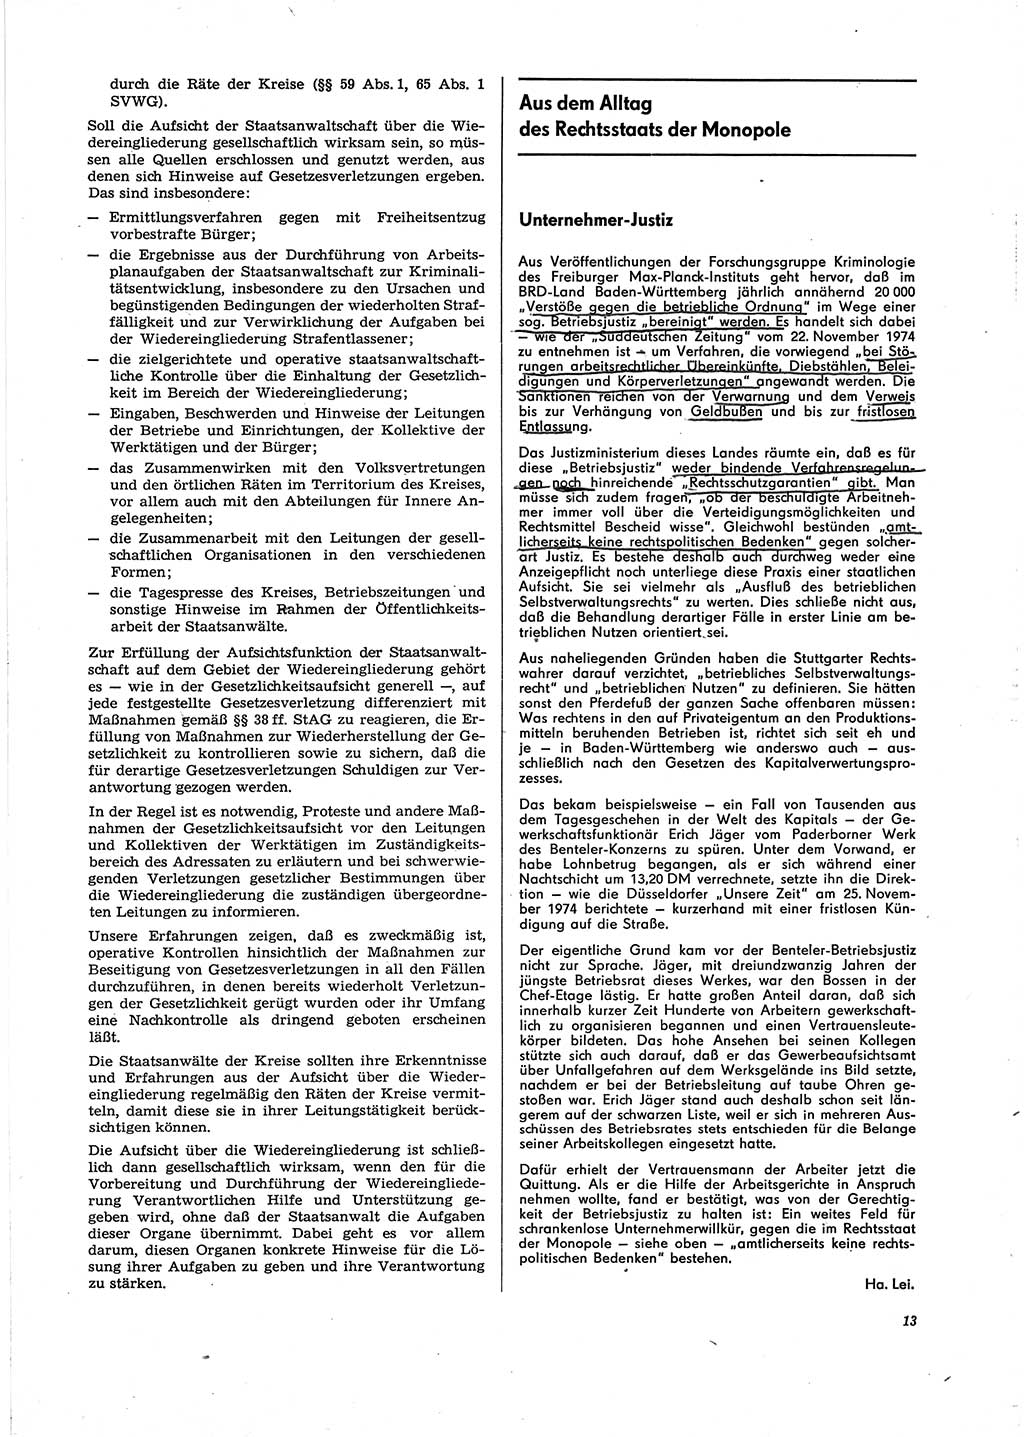 Neue Justiz (NJ), Zeitschrift für Recht und Rechtswissenschaft [Deutsche Demokratische Republik (DDR)], 29. Jahrgang 1975, Seite 13 (NJ DDR 1975, S. 13)